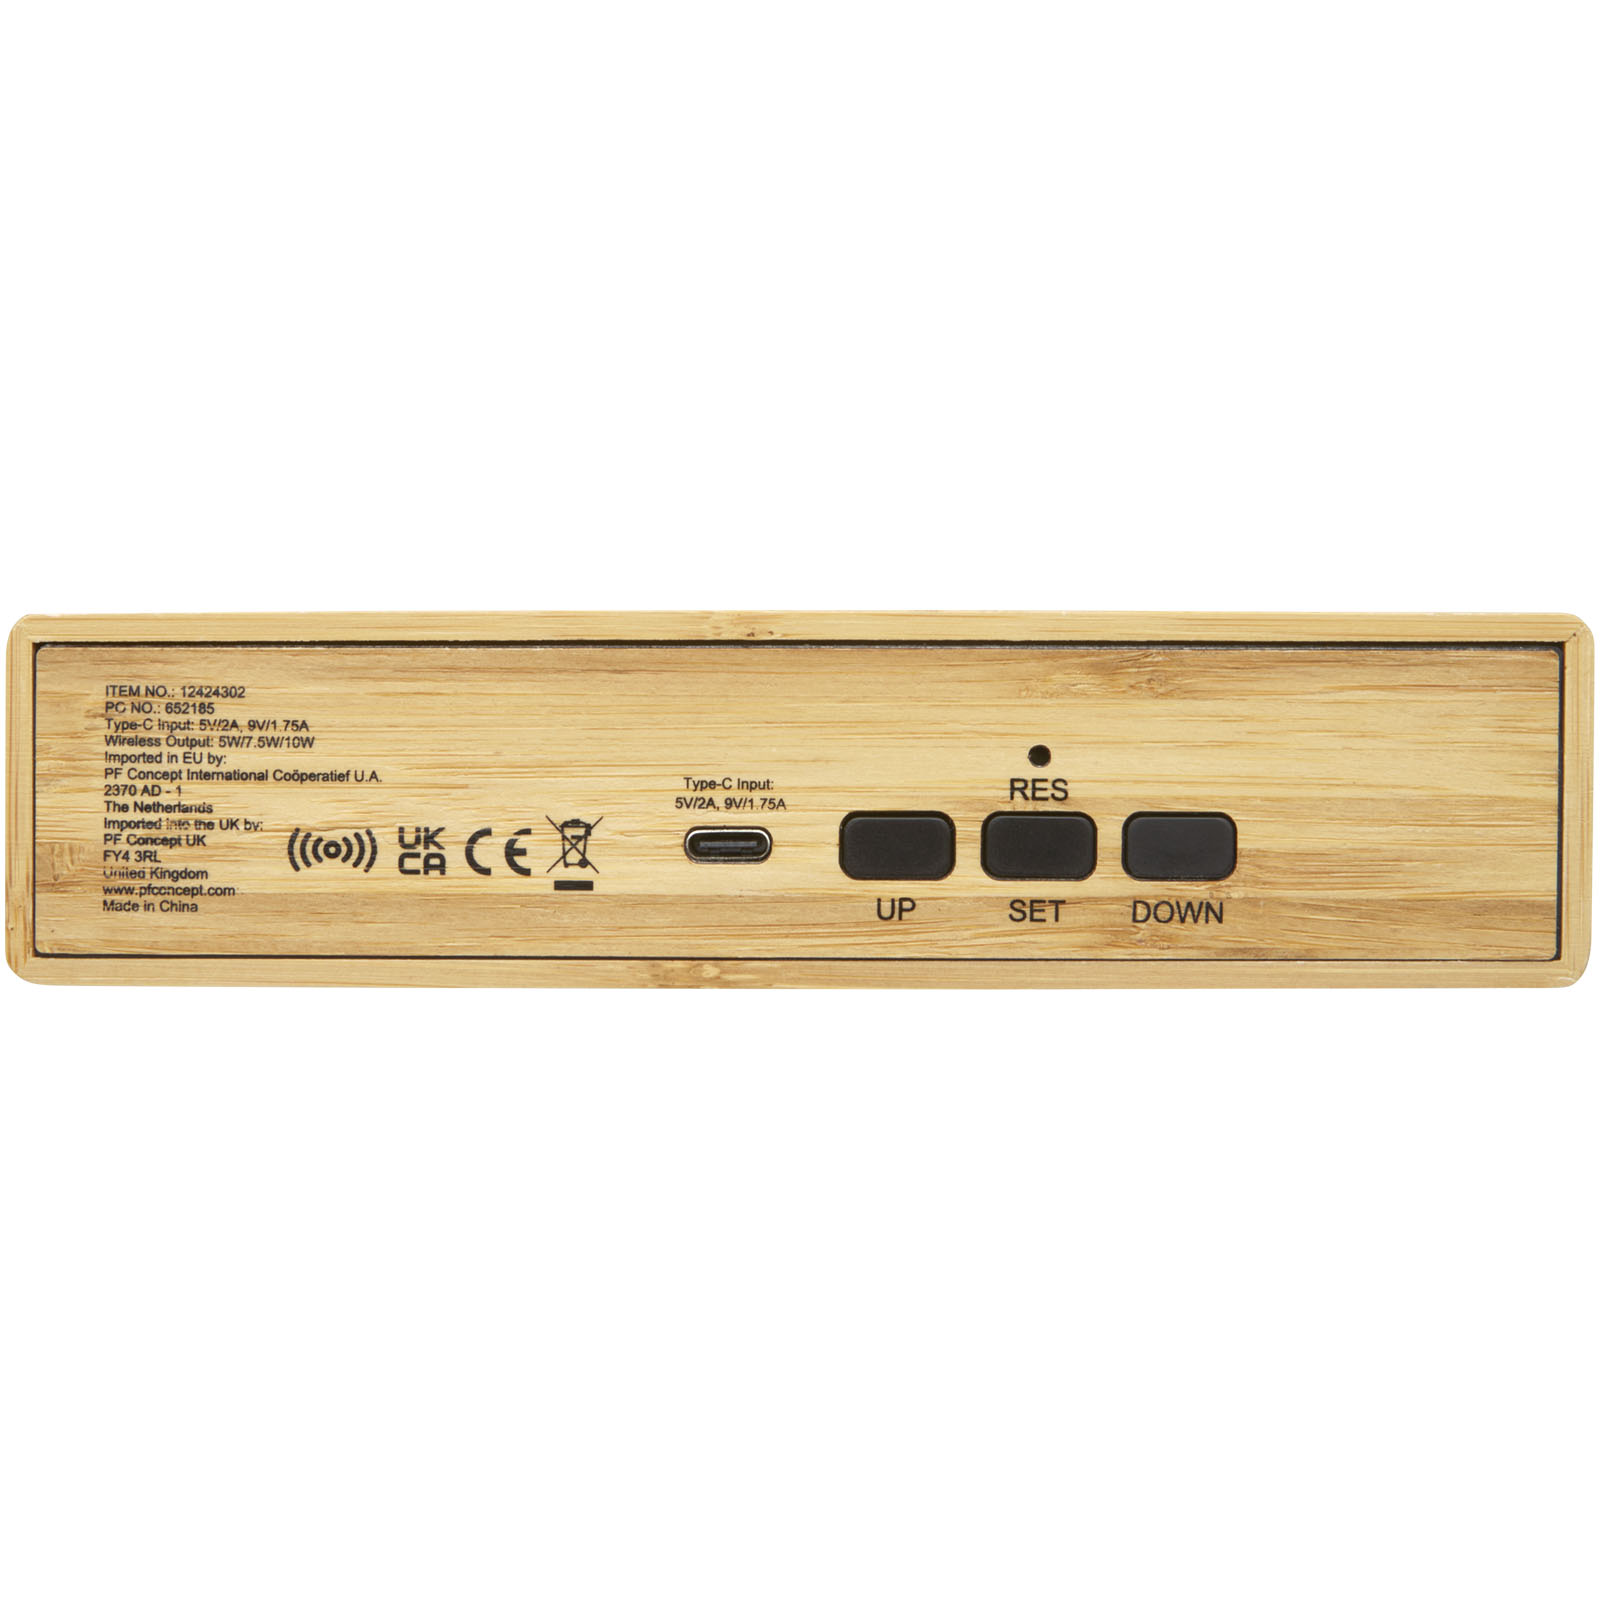 Chargeurs sans fil publicitaires - Chargeur à induction Minata en bambou avec horloge - 3